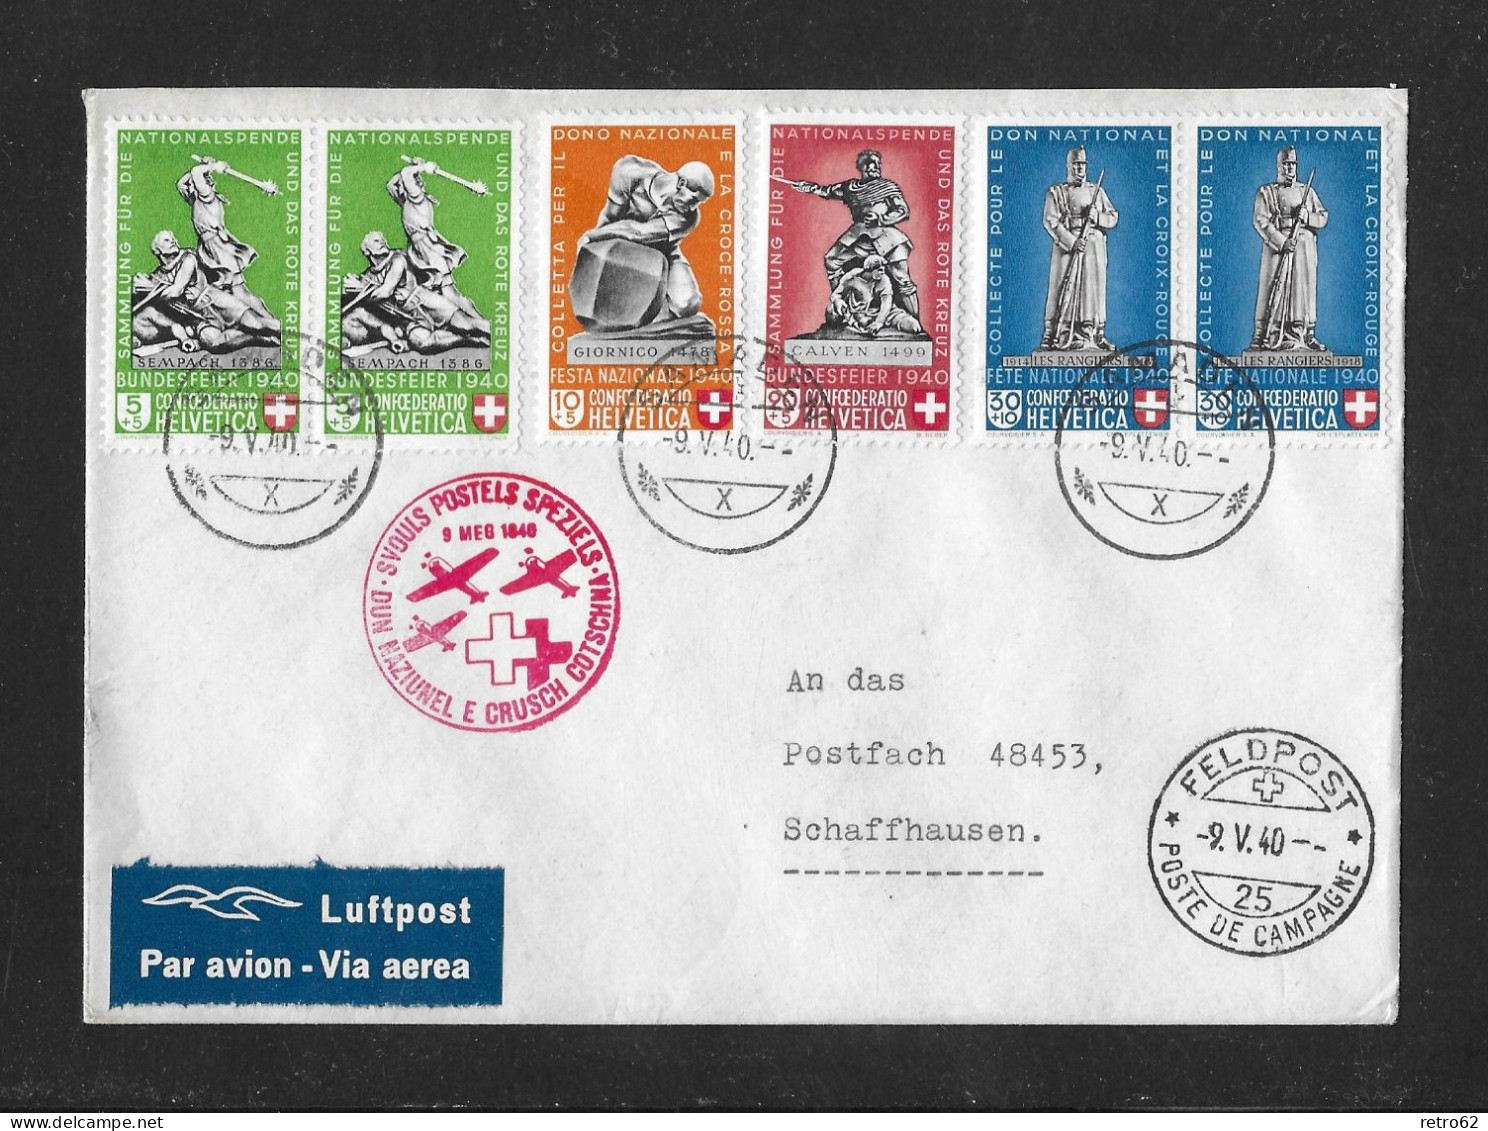 1940 GESCHICHTLICHE MOTIVE ► Luftpost Brief Nationalspende Rotes Kreuz, Postsammelstelle SAMADEN   ►SLH-SF 40.2q◄ - Briefe U. Dokumente